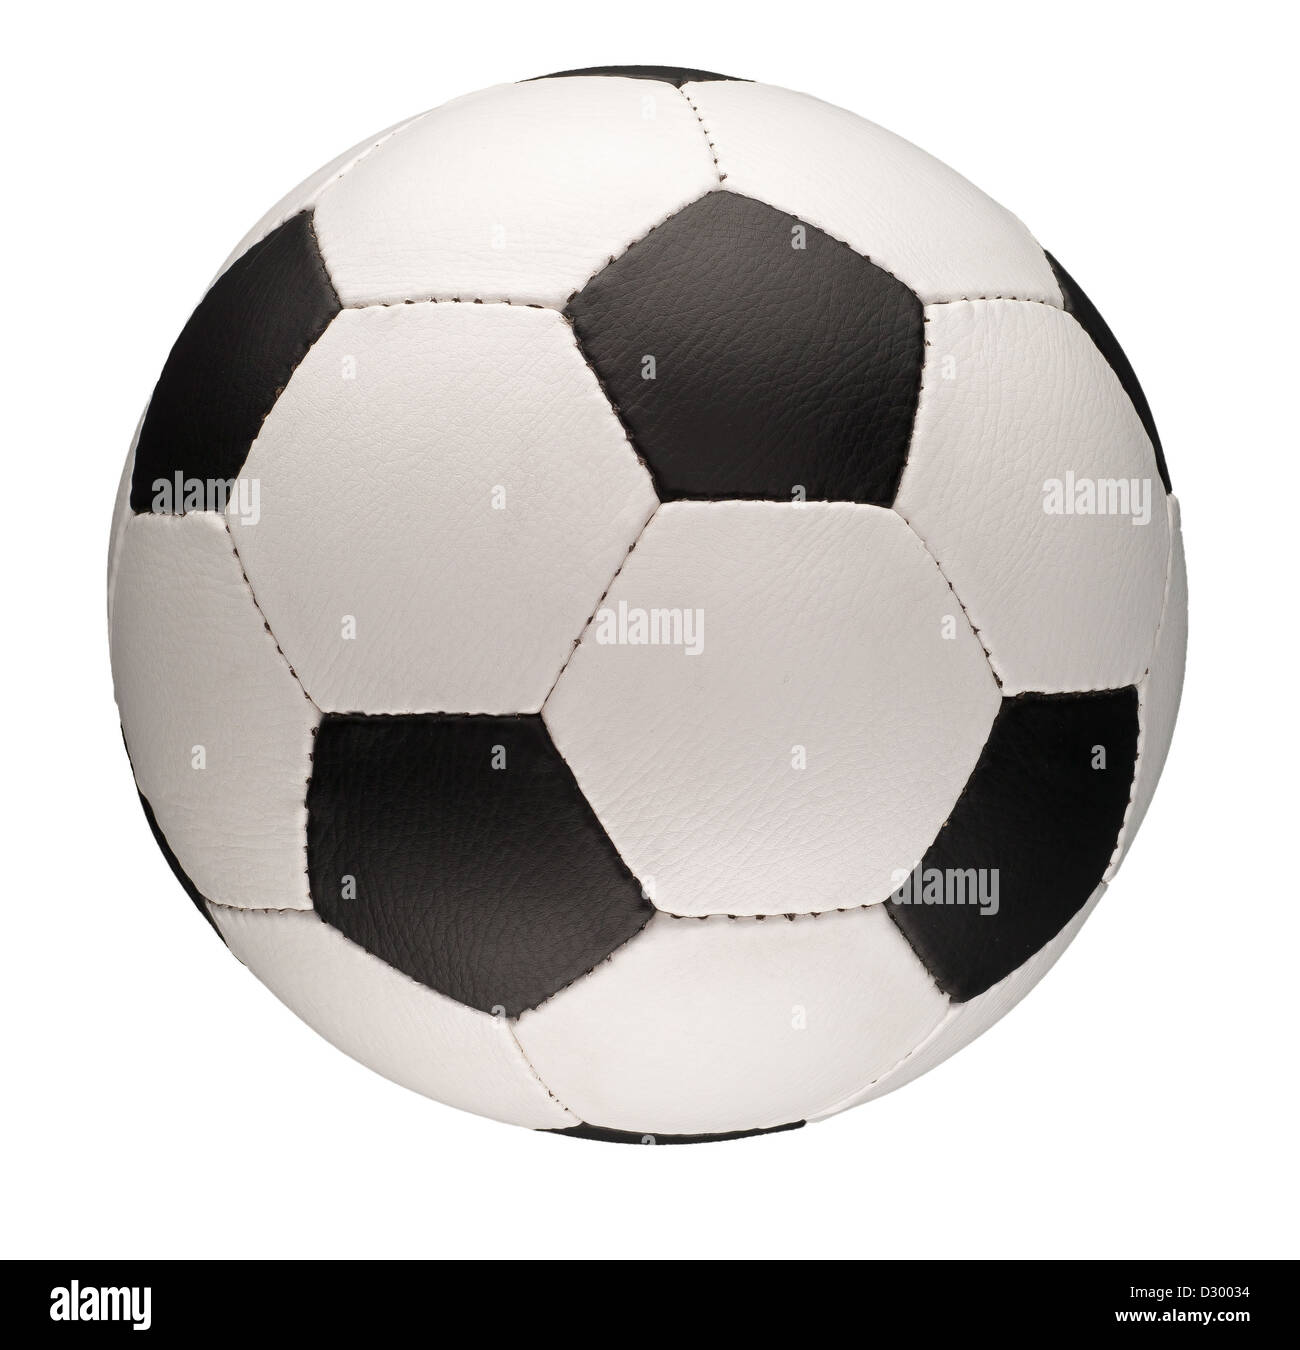 Ein Fußball mit schwarzen Fünfecken und weißen Sechsecken. Stockfoto